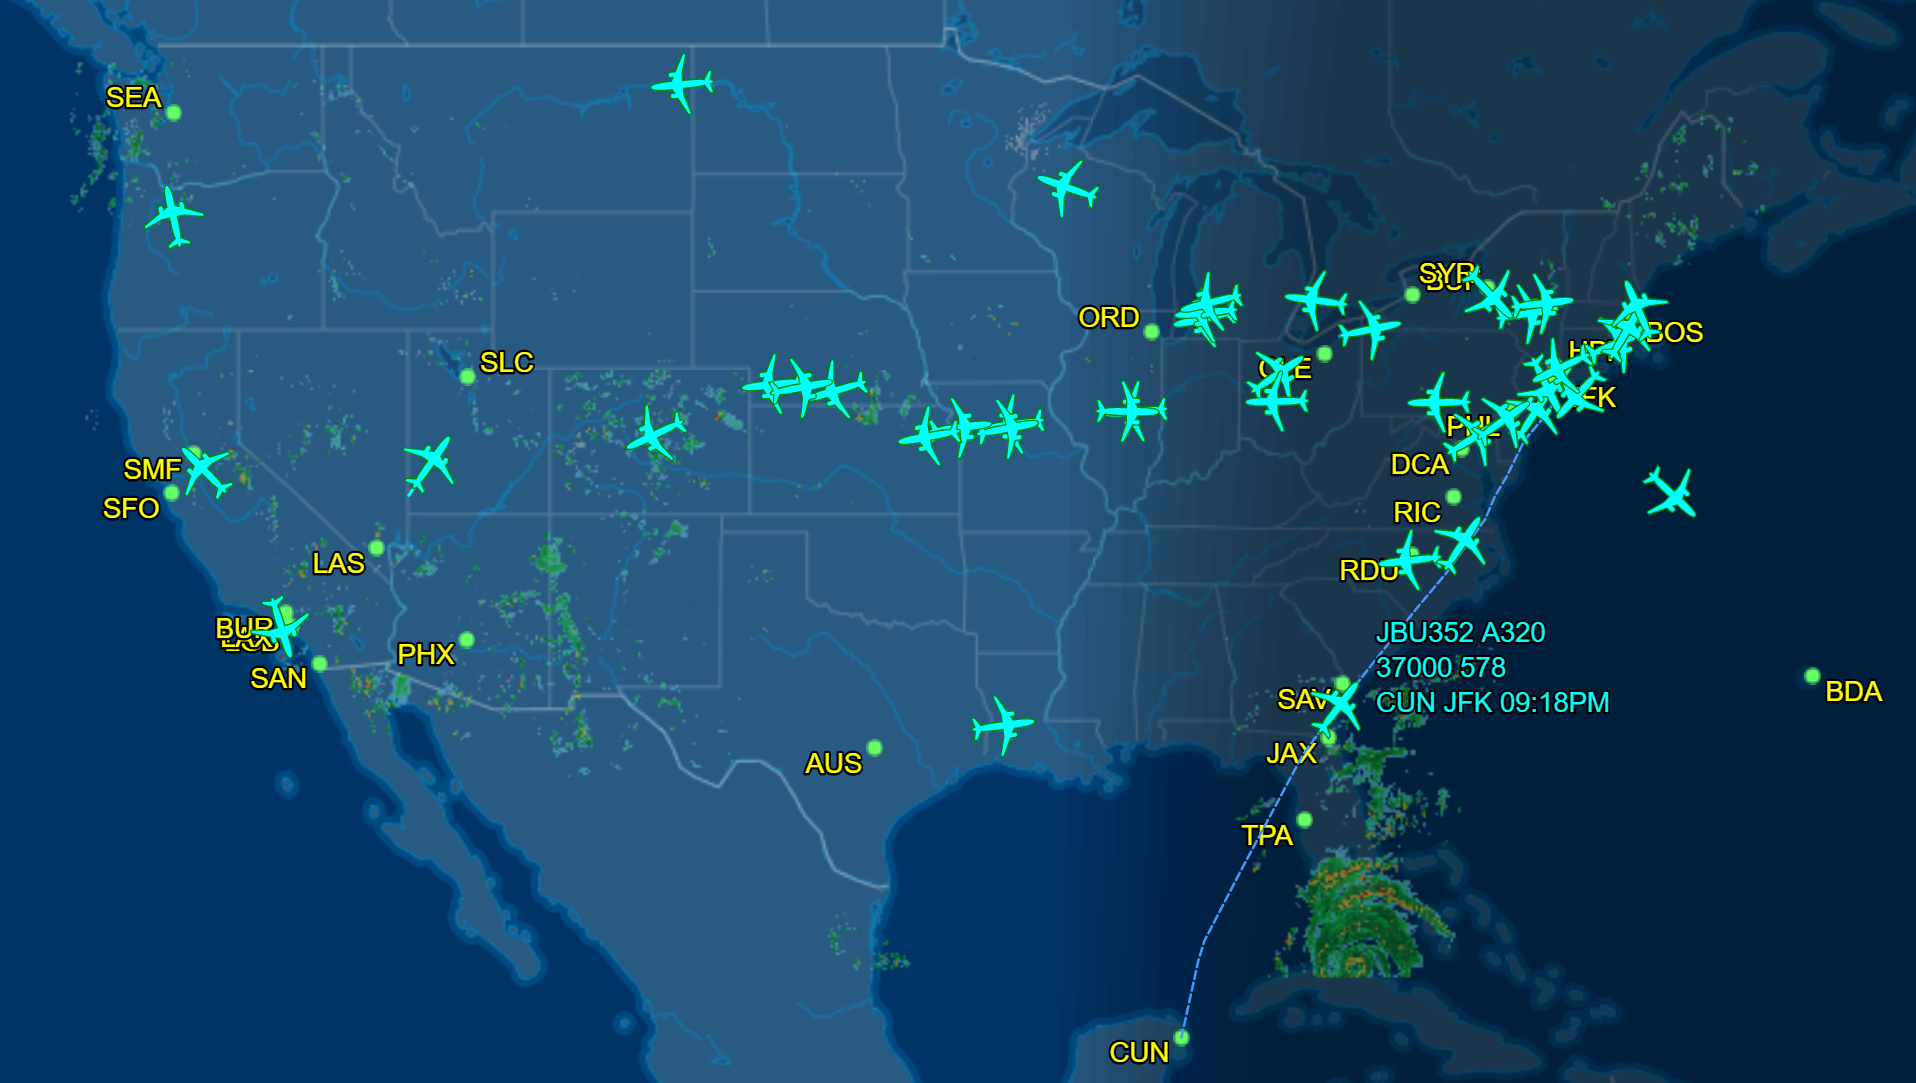 delta airlines flight status tracker